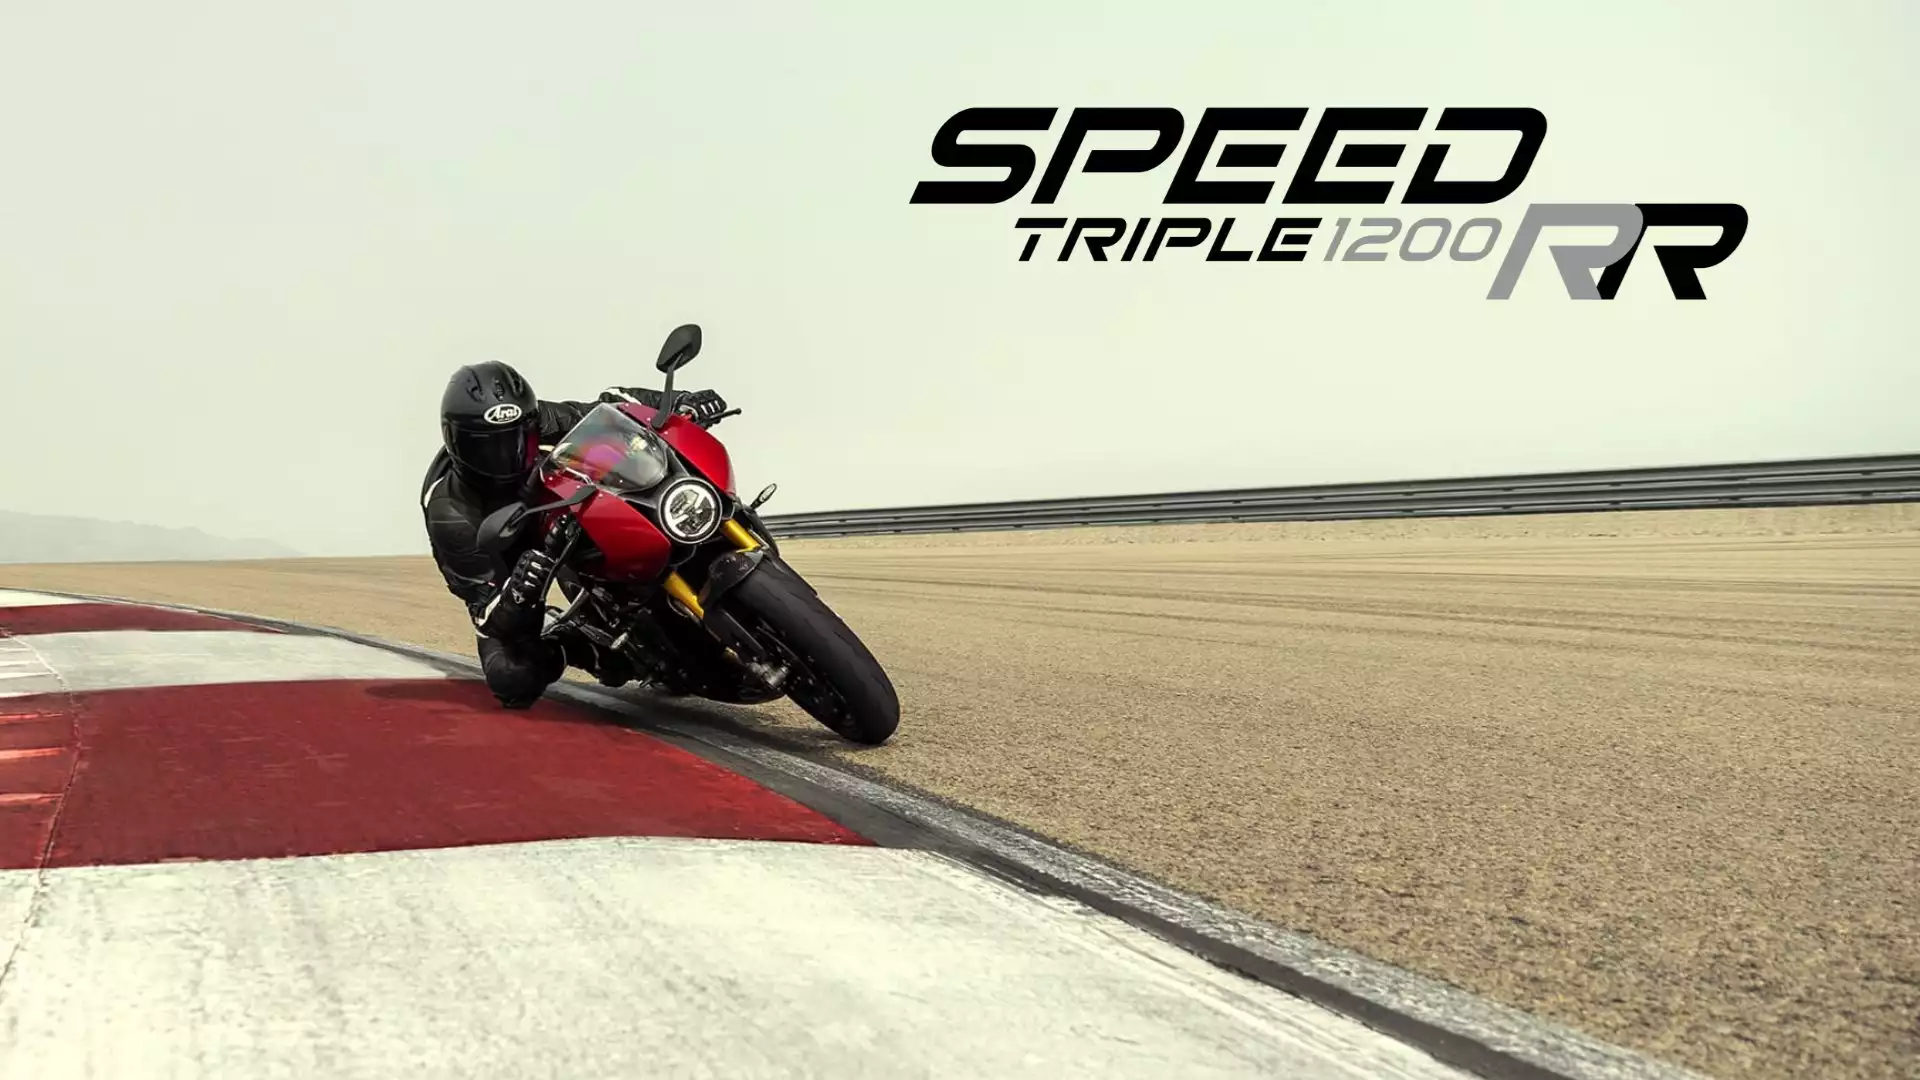 Speed Triple 1200 RR